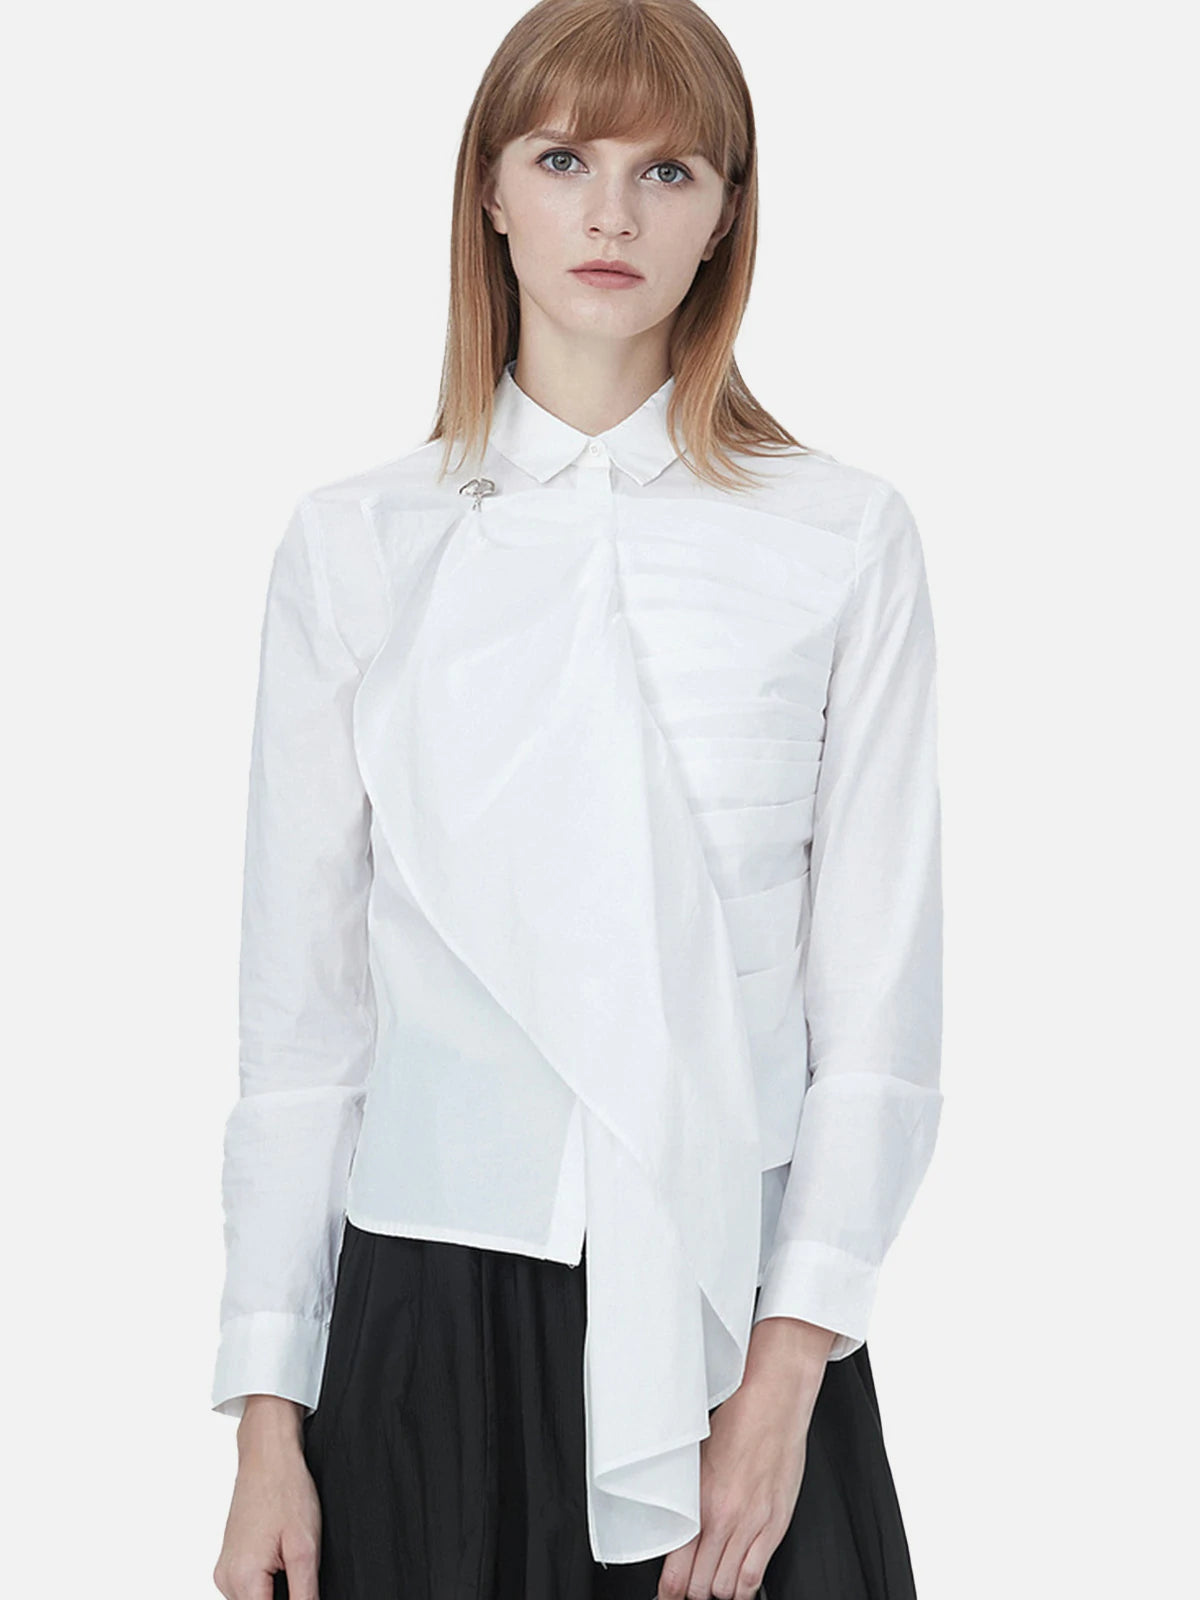 Irregularly Designed Stacked Long-Sleeved Shirt